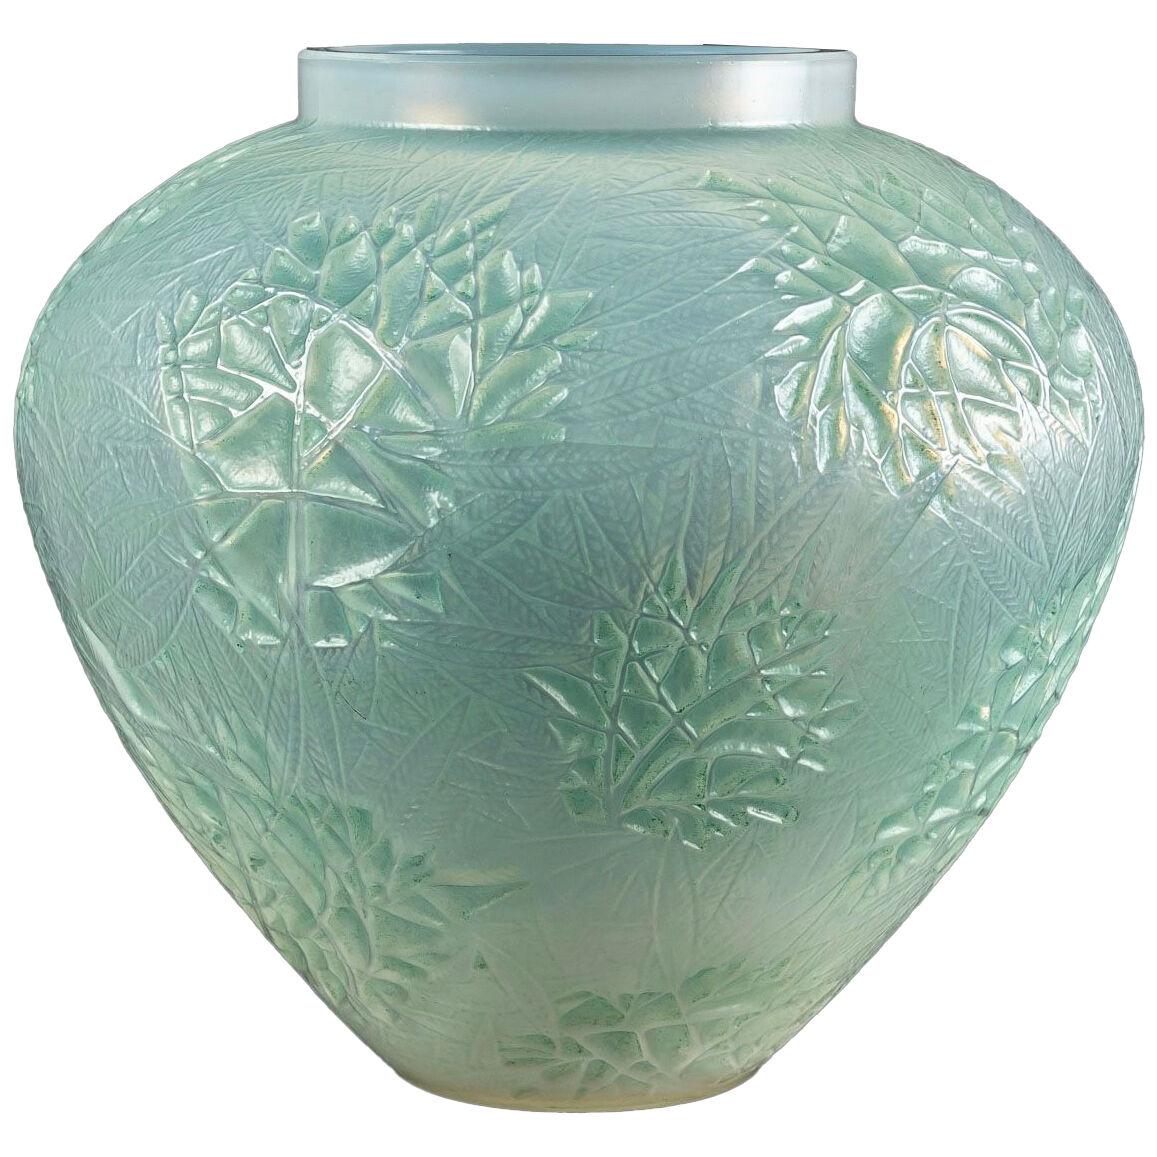 1923 René Lalique - Vase Estérel Double Cased Opalescent Glass With Green Patina